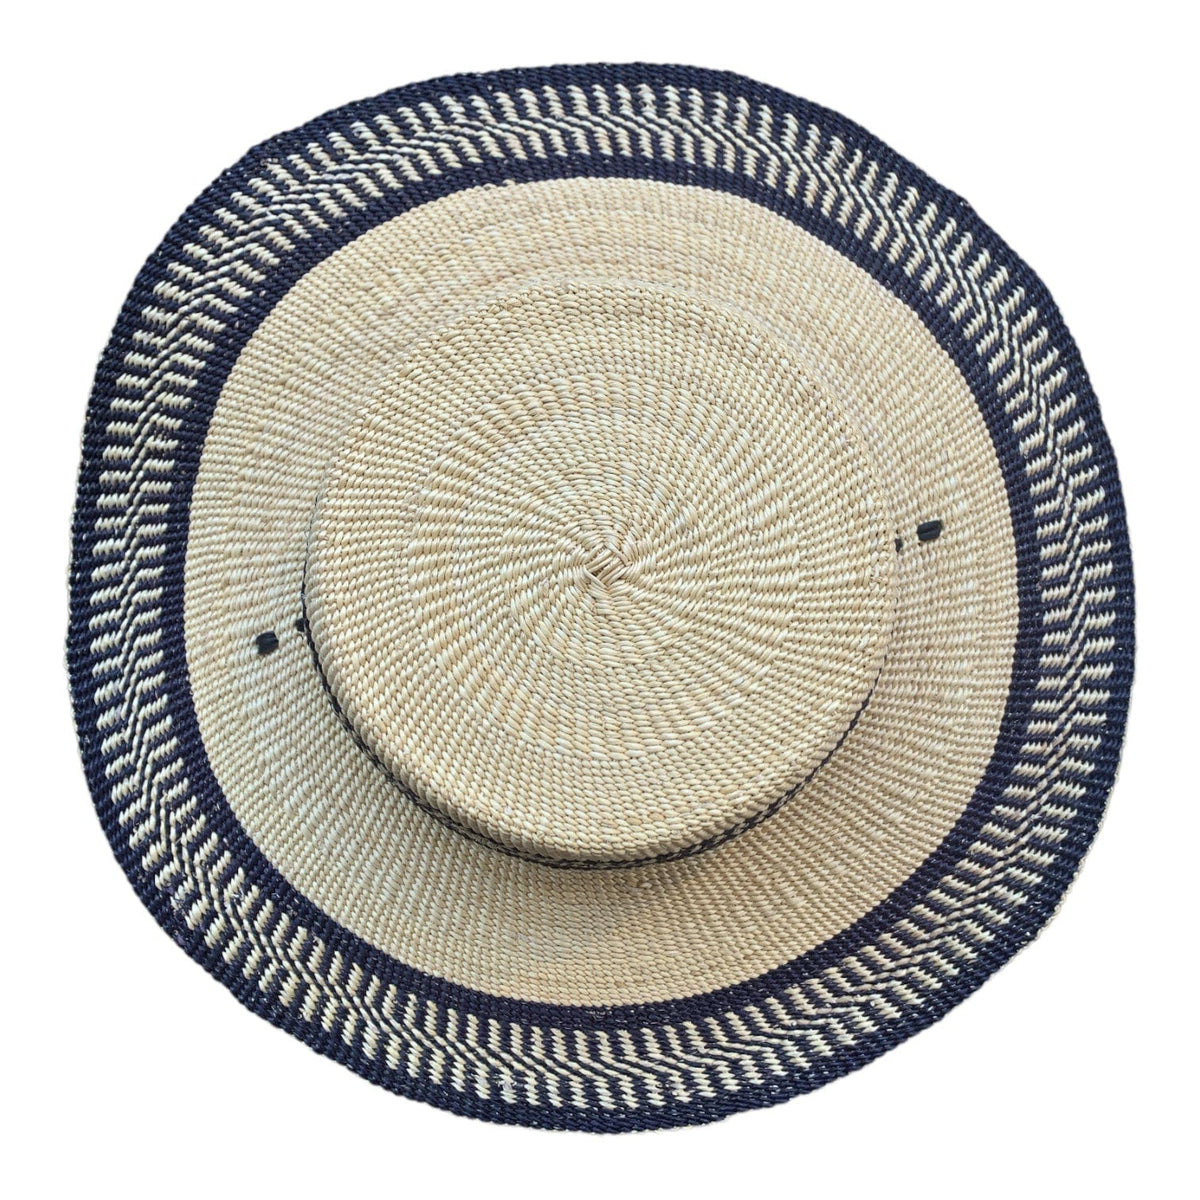 Patagonian Straw Hat